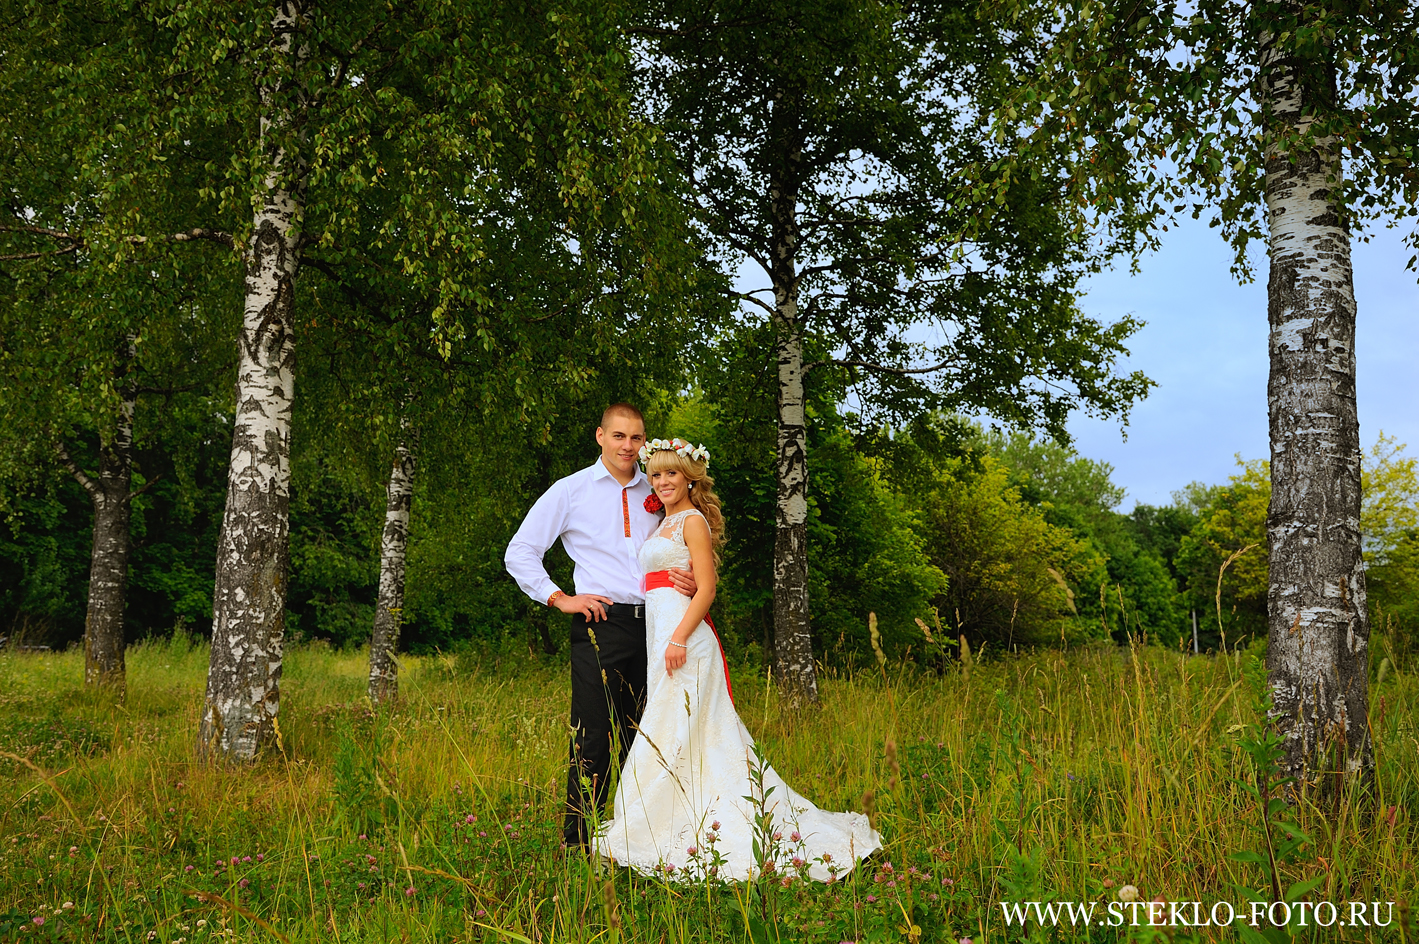 Идеи для свадебной фотосессии летом — советы и рекомендации